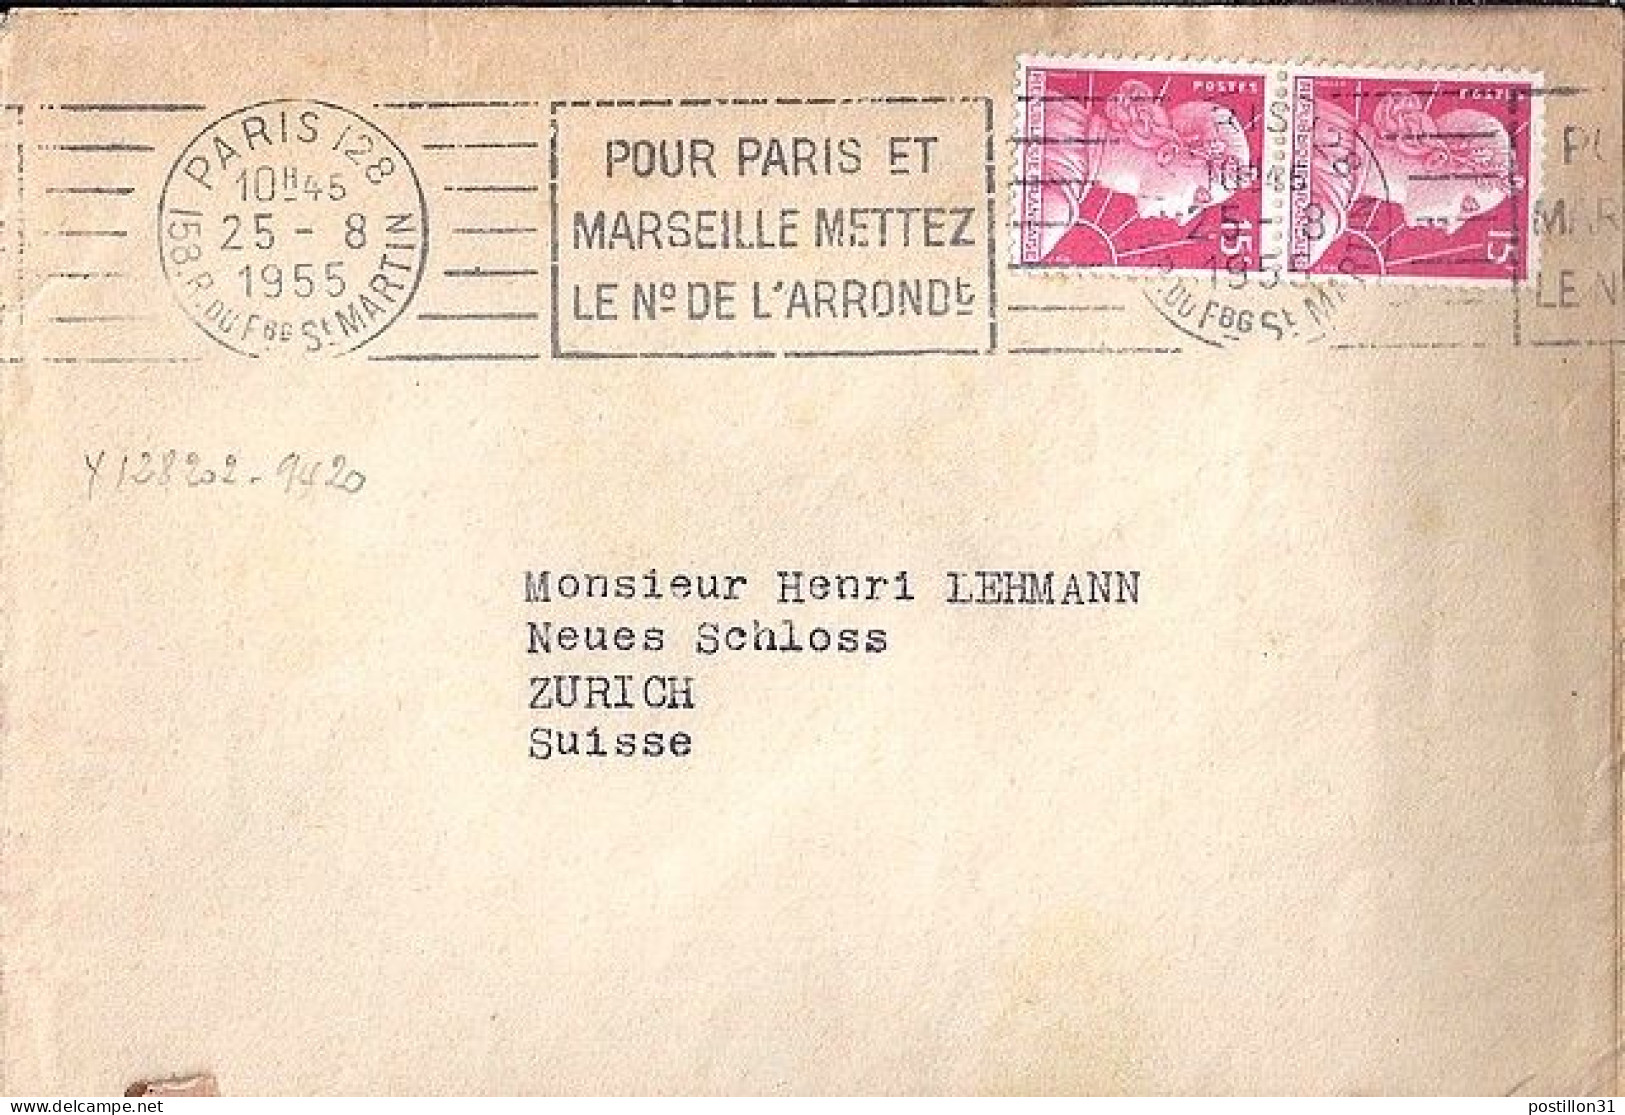 MULLER N° 1011 X 2 S/L. DE PARIS/25.8.55 POUR LA SUISSE - 1955-1961 Marianne Of Muller